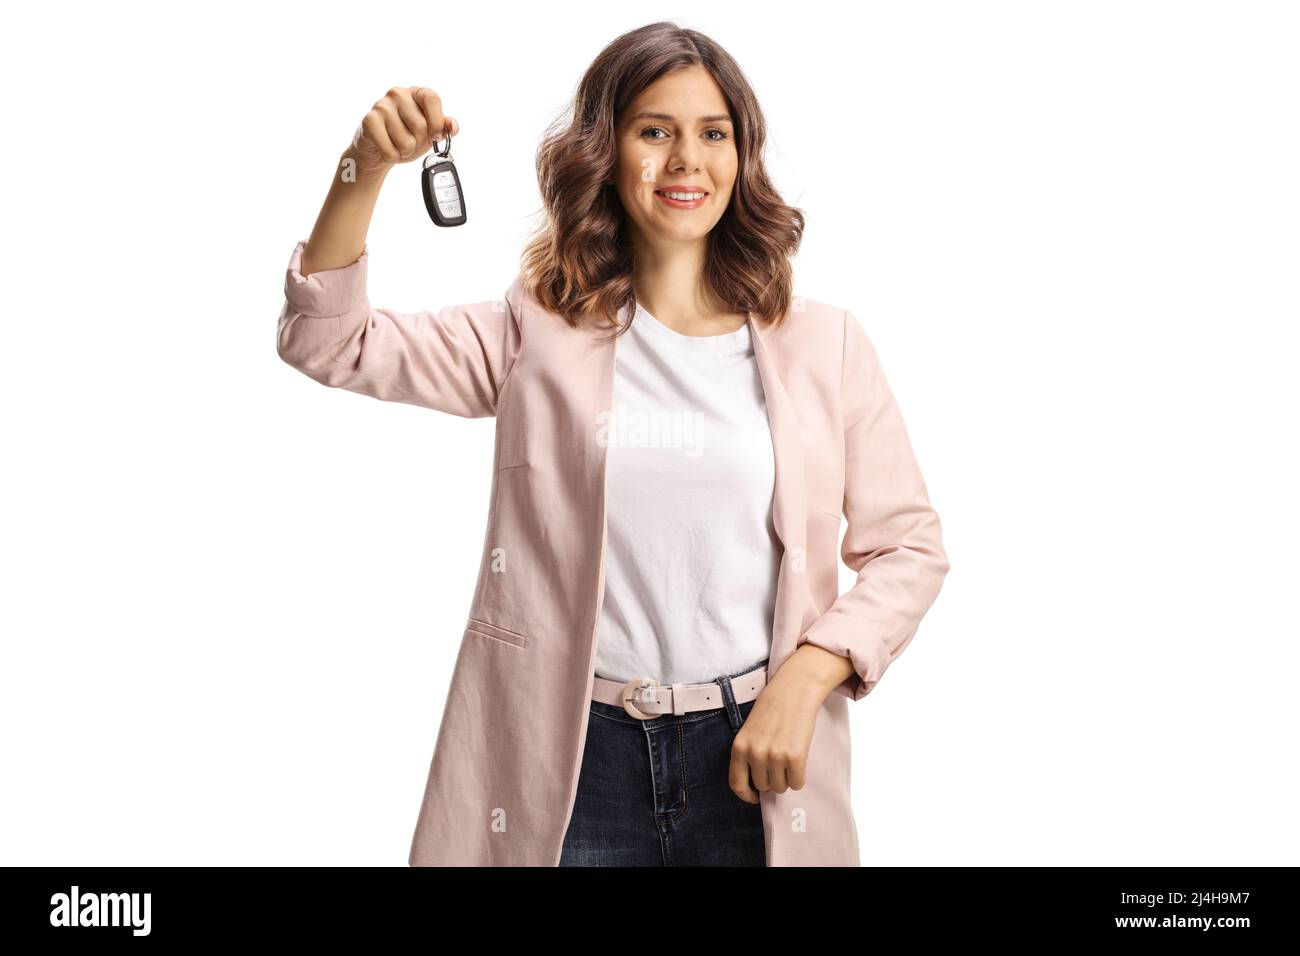 Junge Frau mit Autoschlüssel und lächelnd isoliert auf weißem Hintergrund Stockfoto